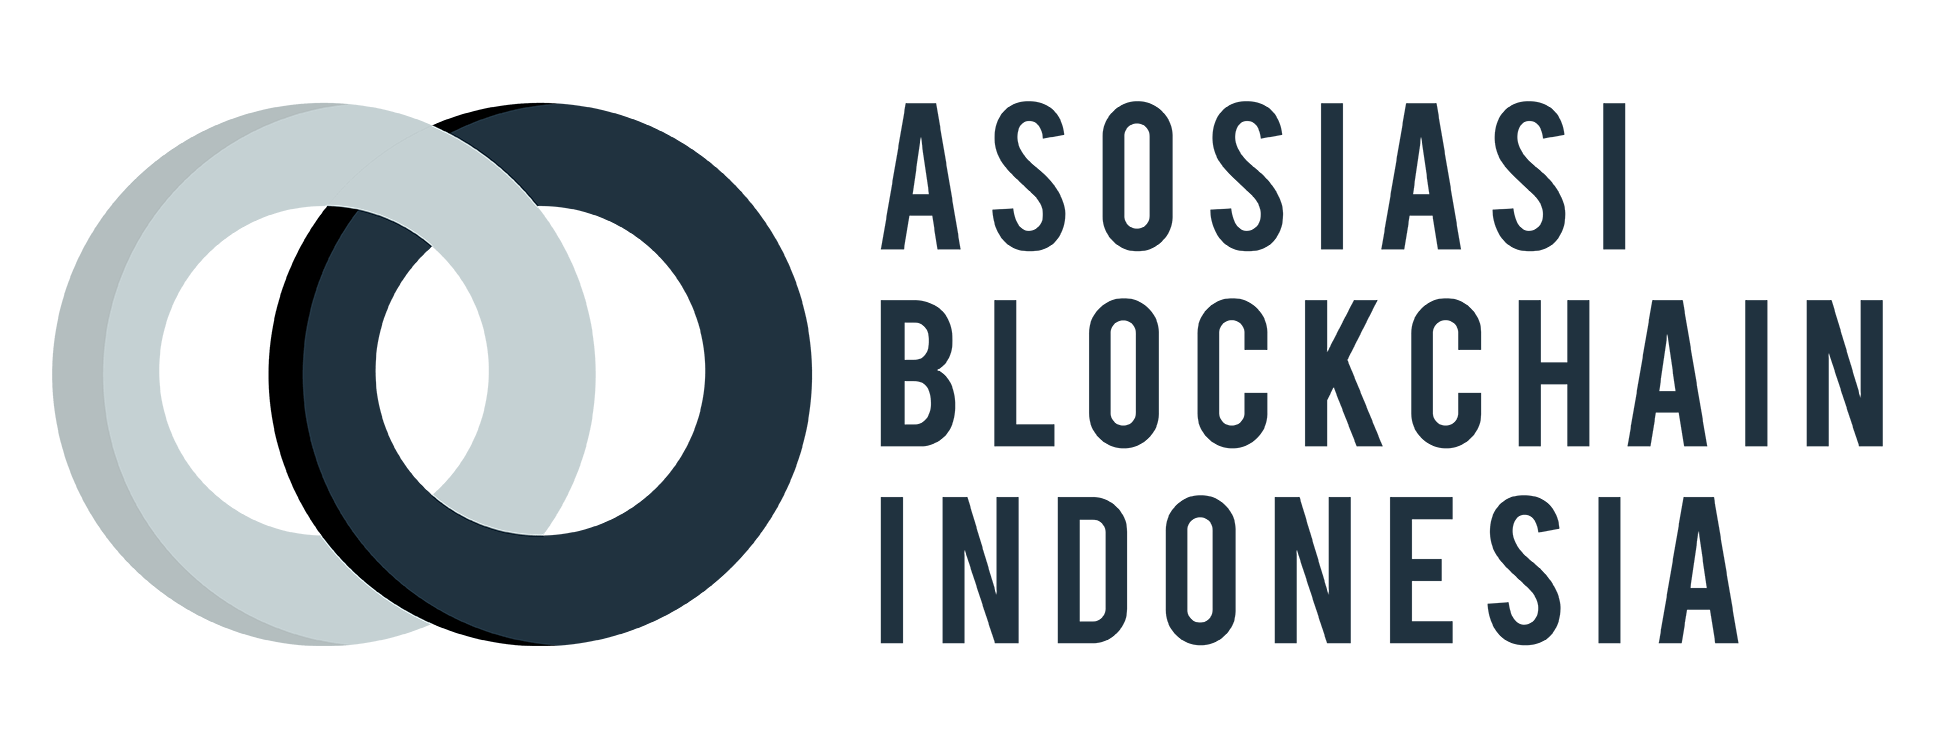 Asosiasi Blockchain Indonesia: Sejarah, Visi dan Keanggotaan